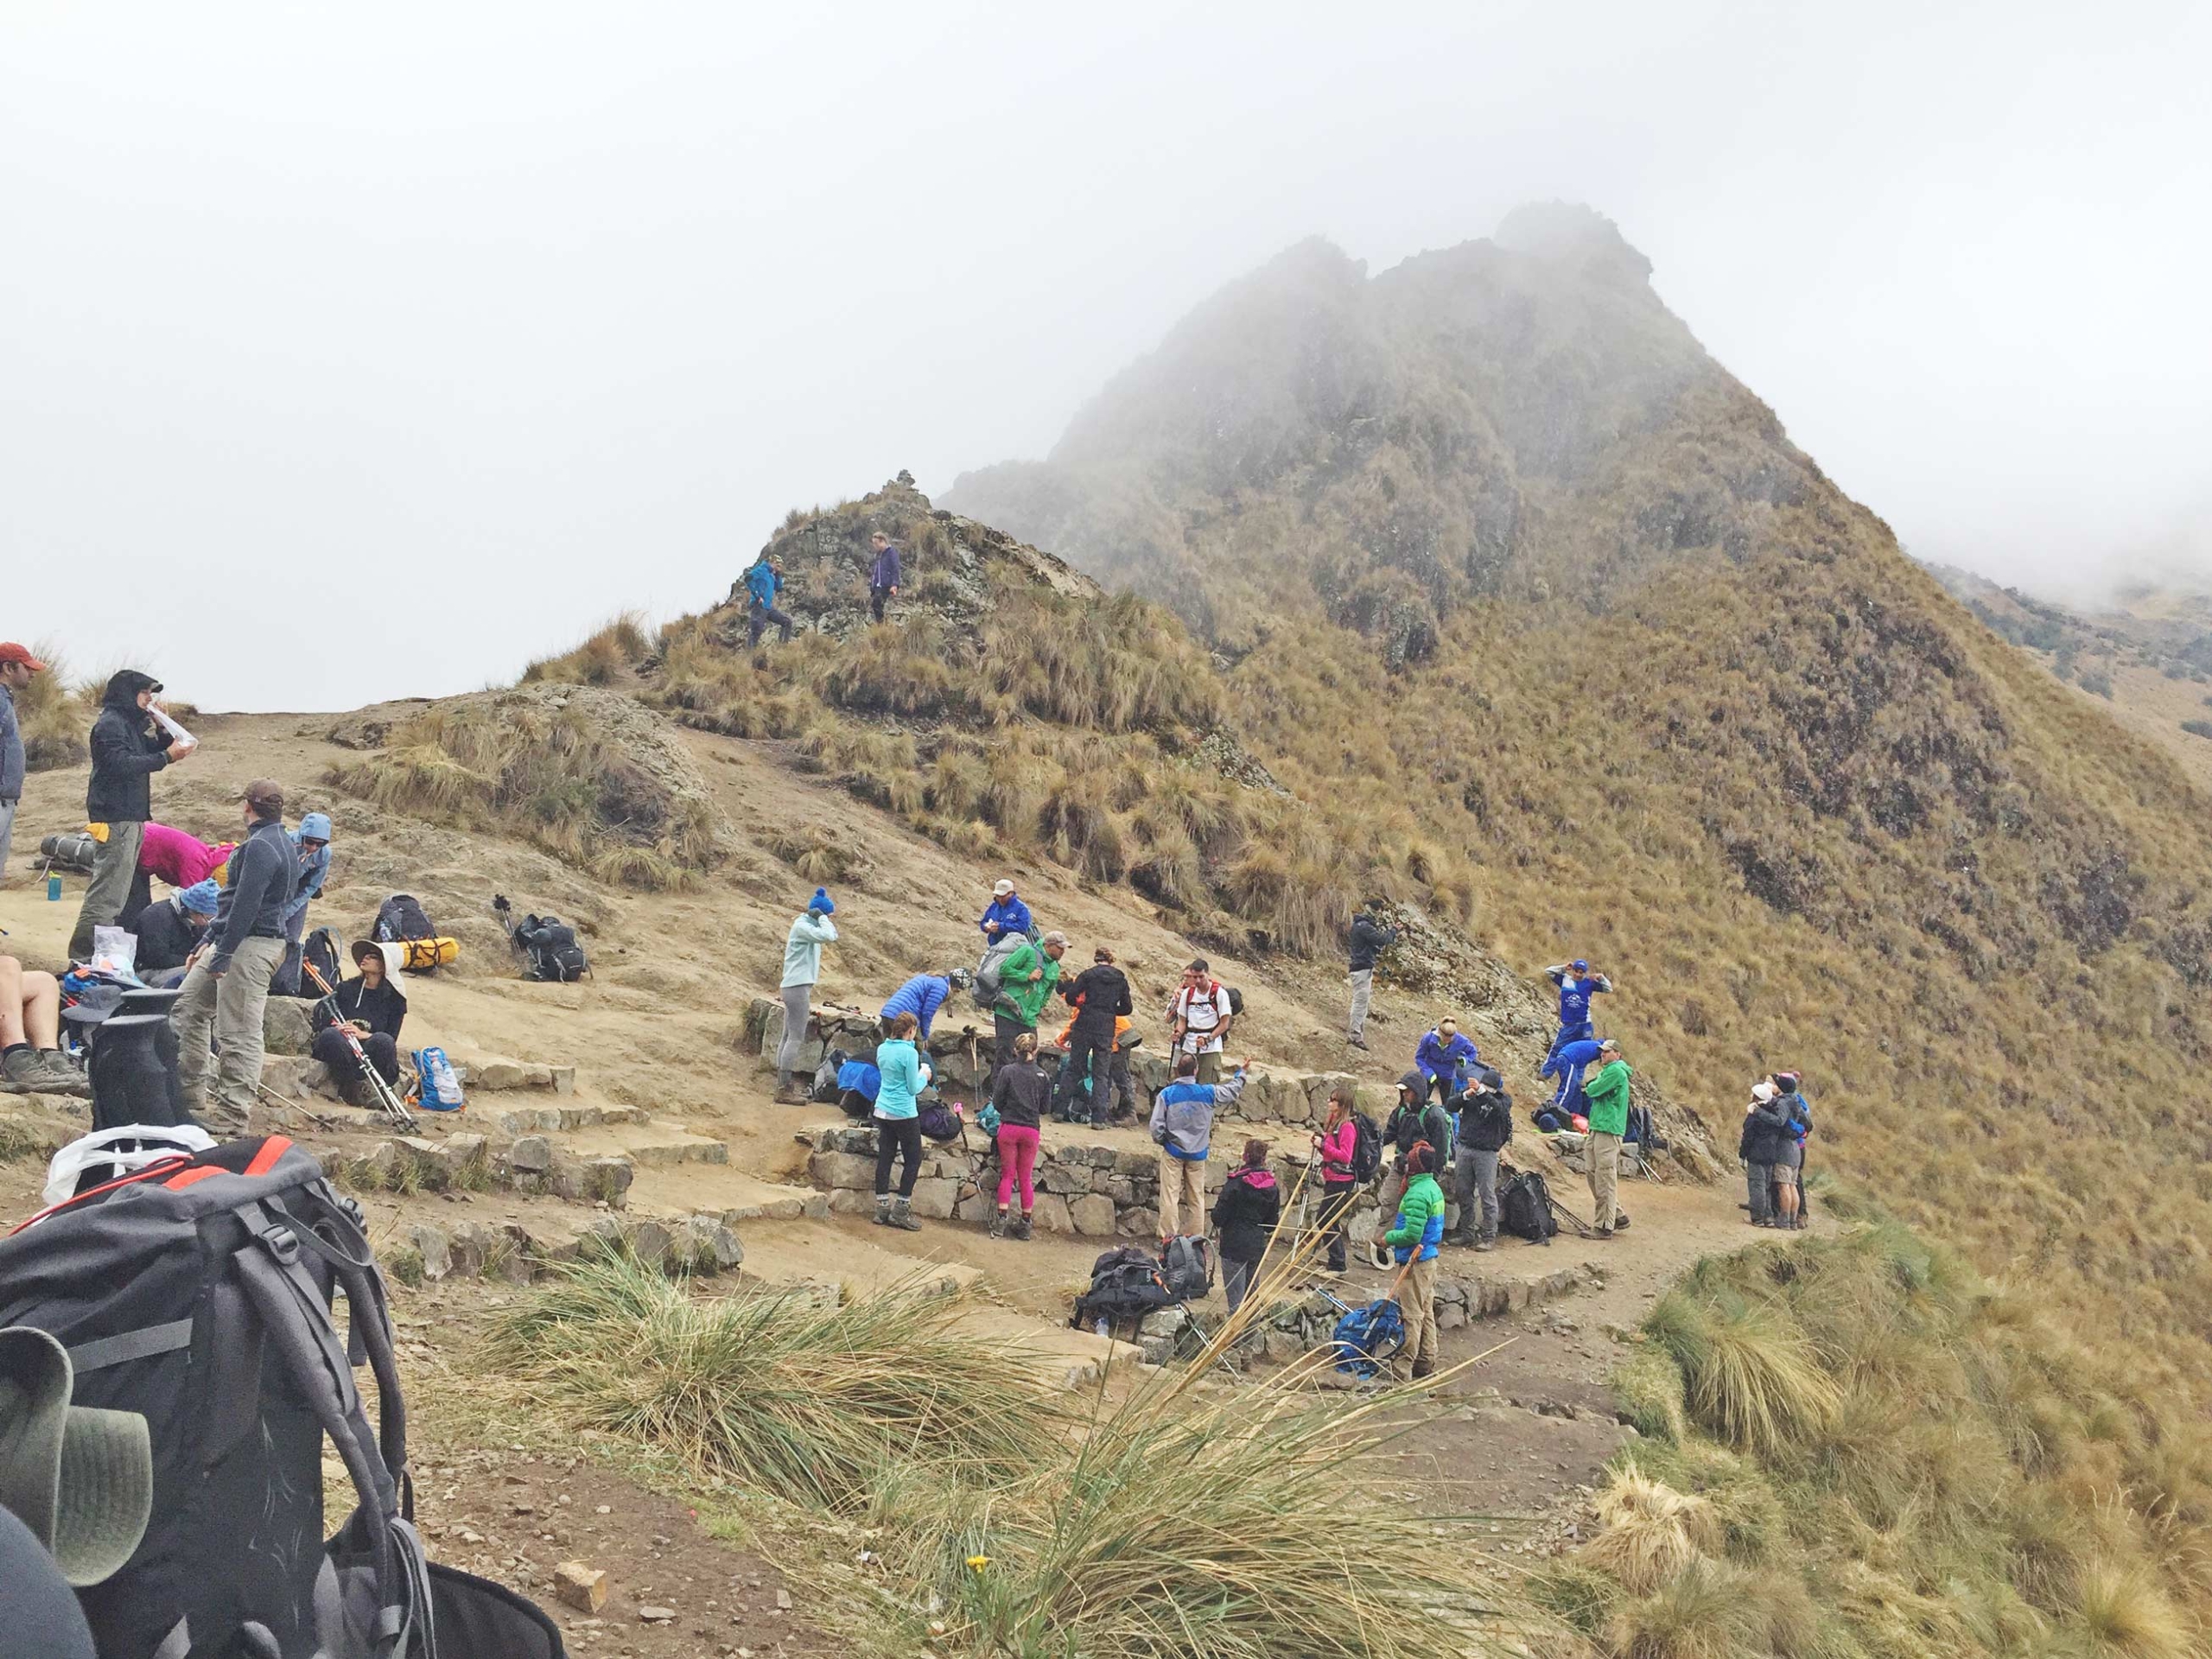 Inka trail in Peru